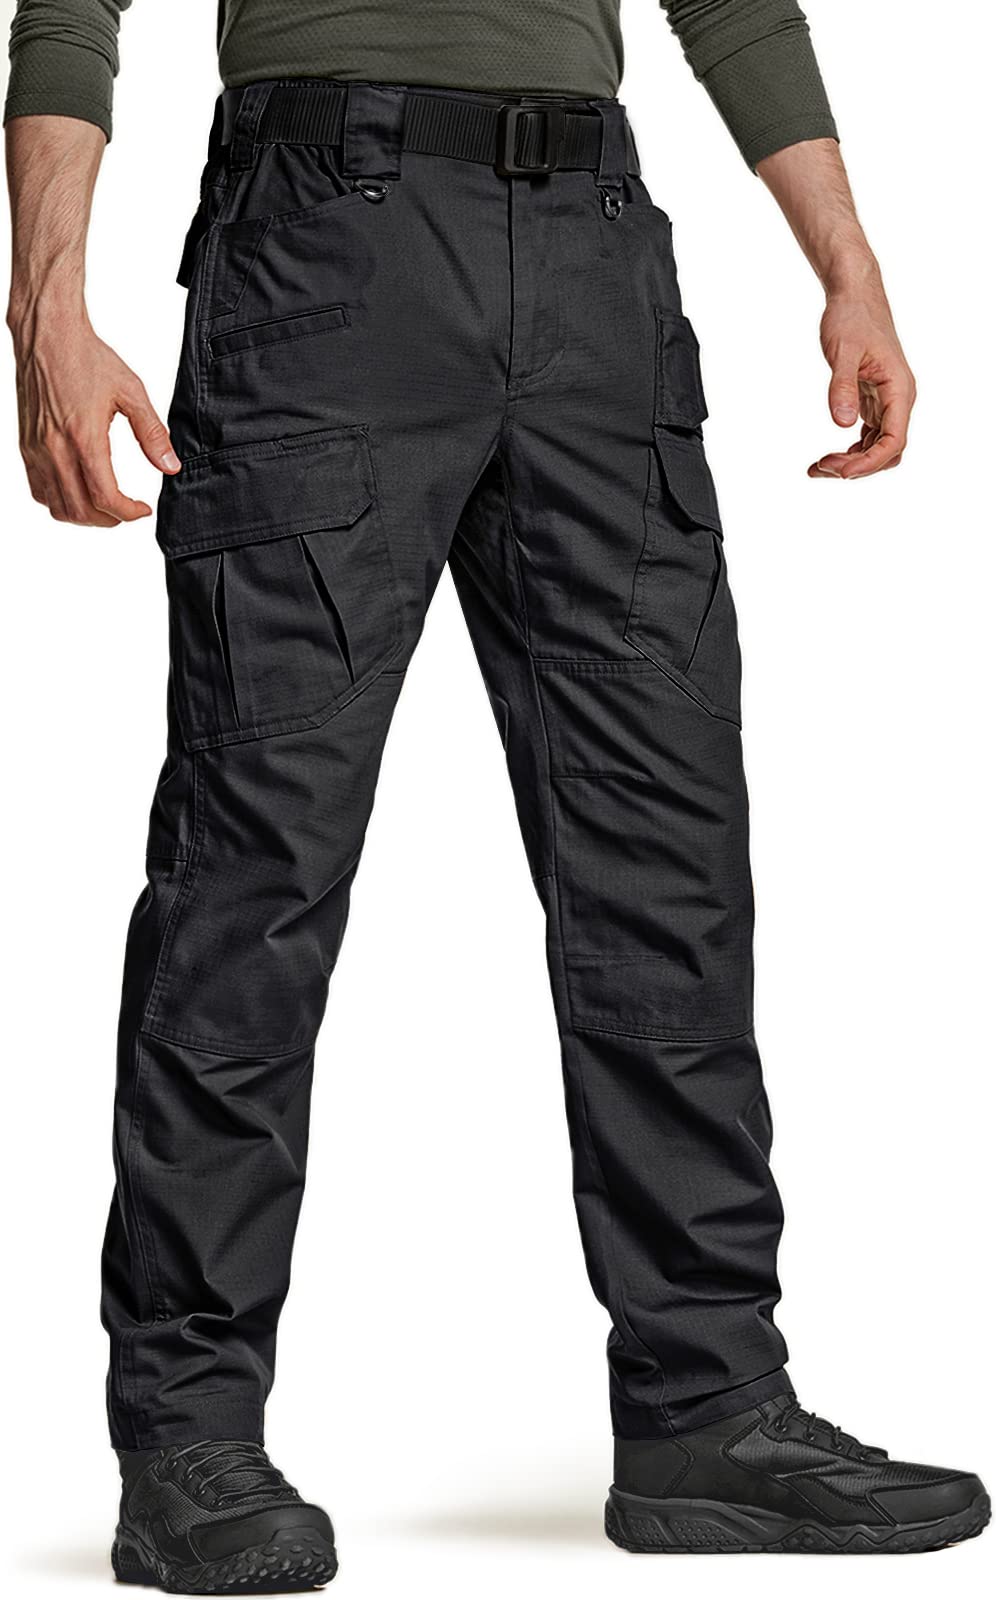 Men's Ultralight Cargo Pants: Hiking & Travel Pant For Men